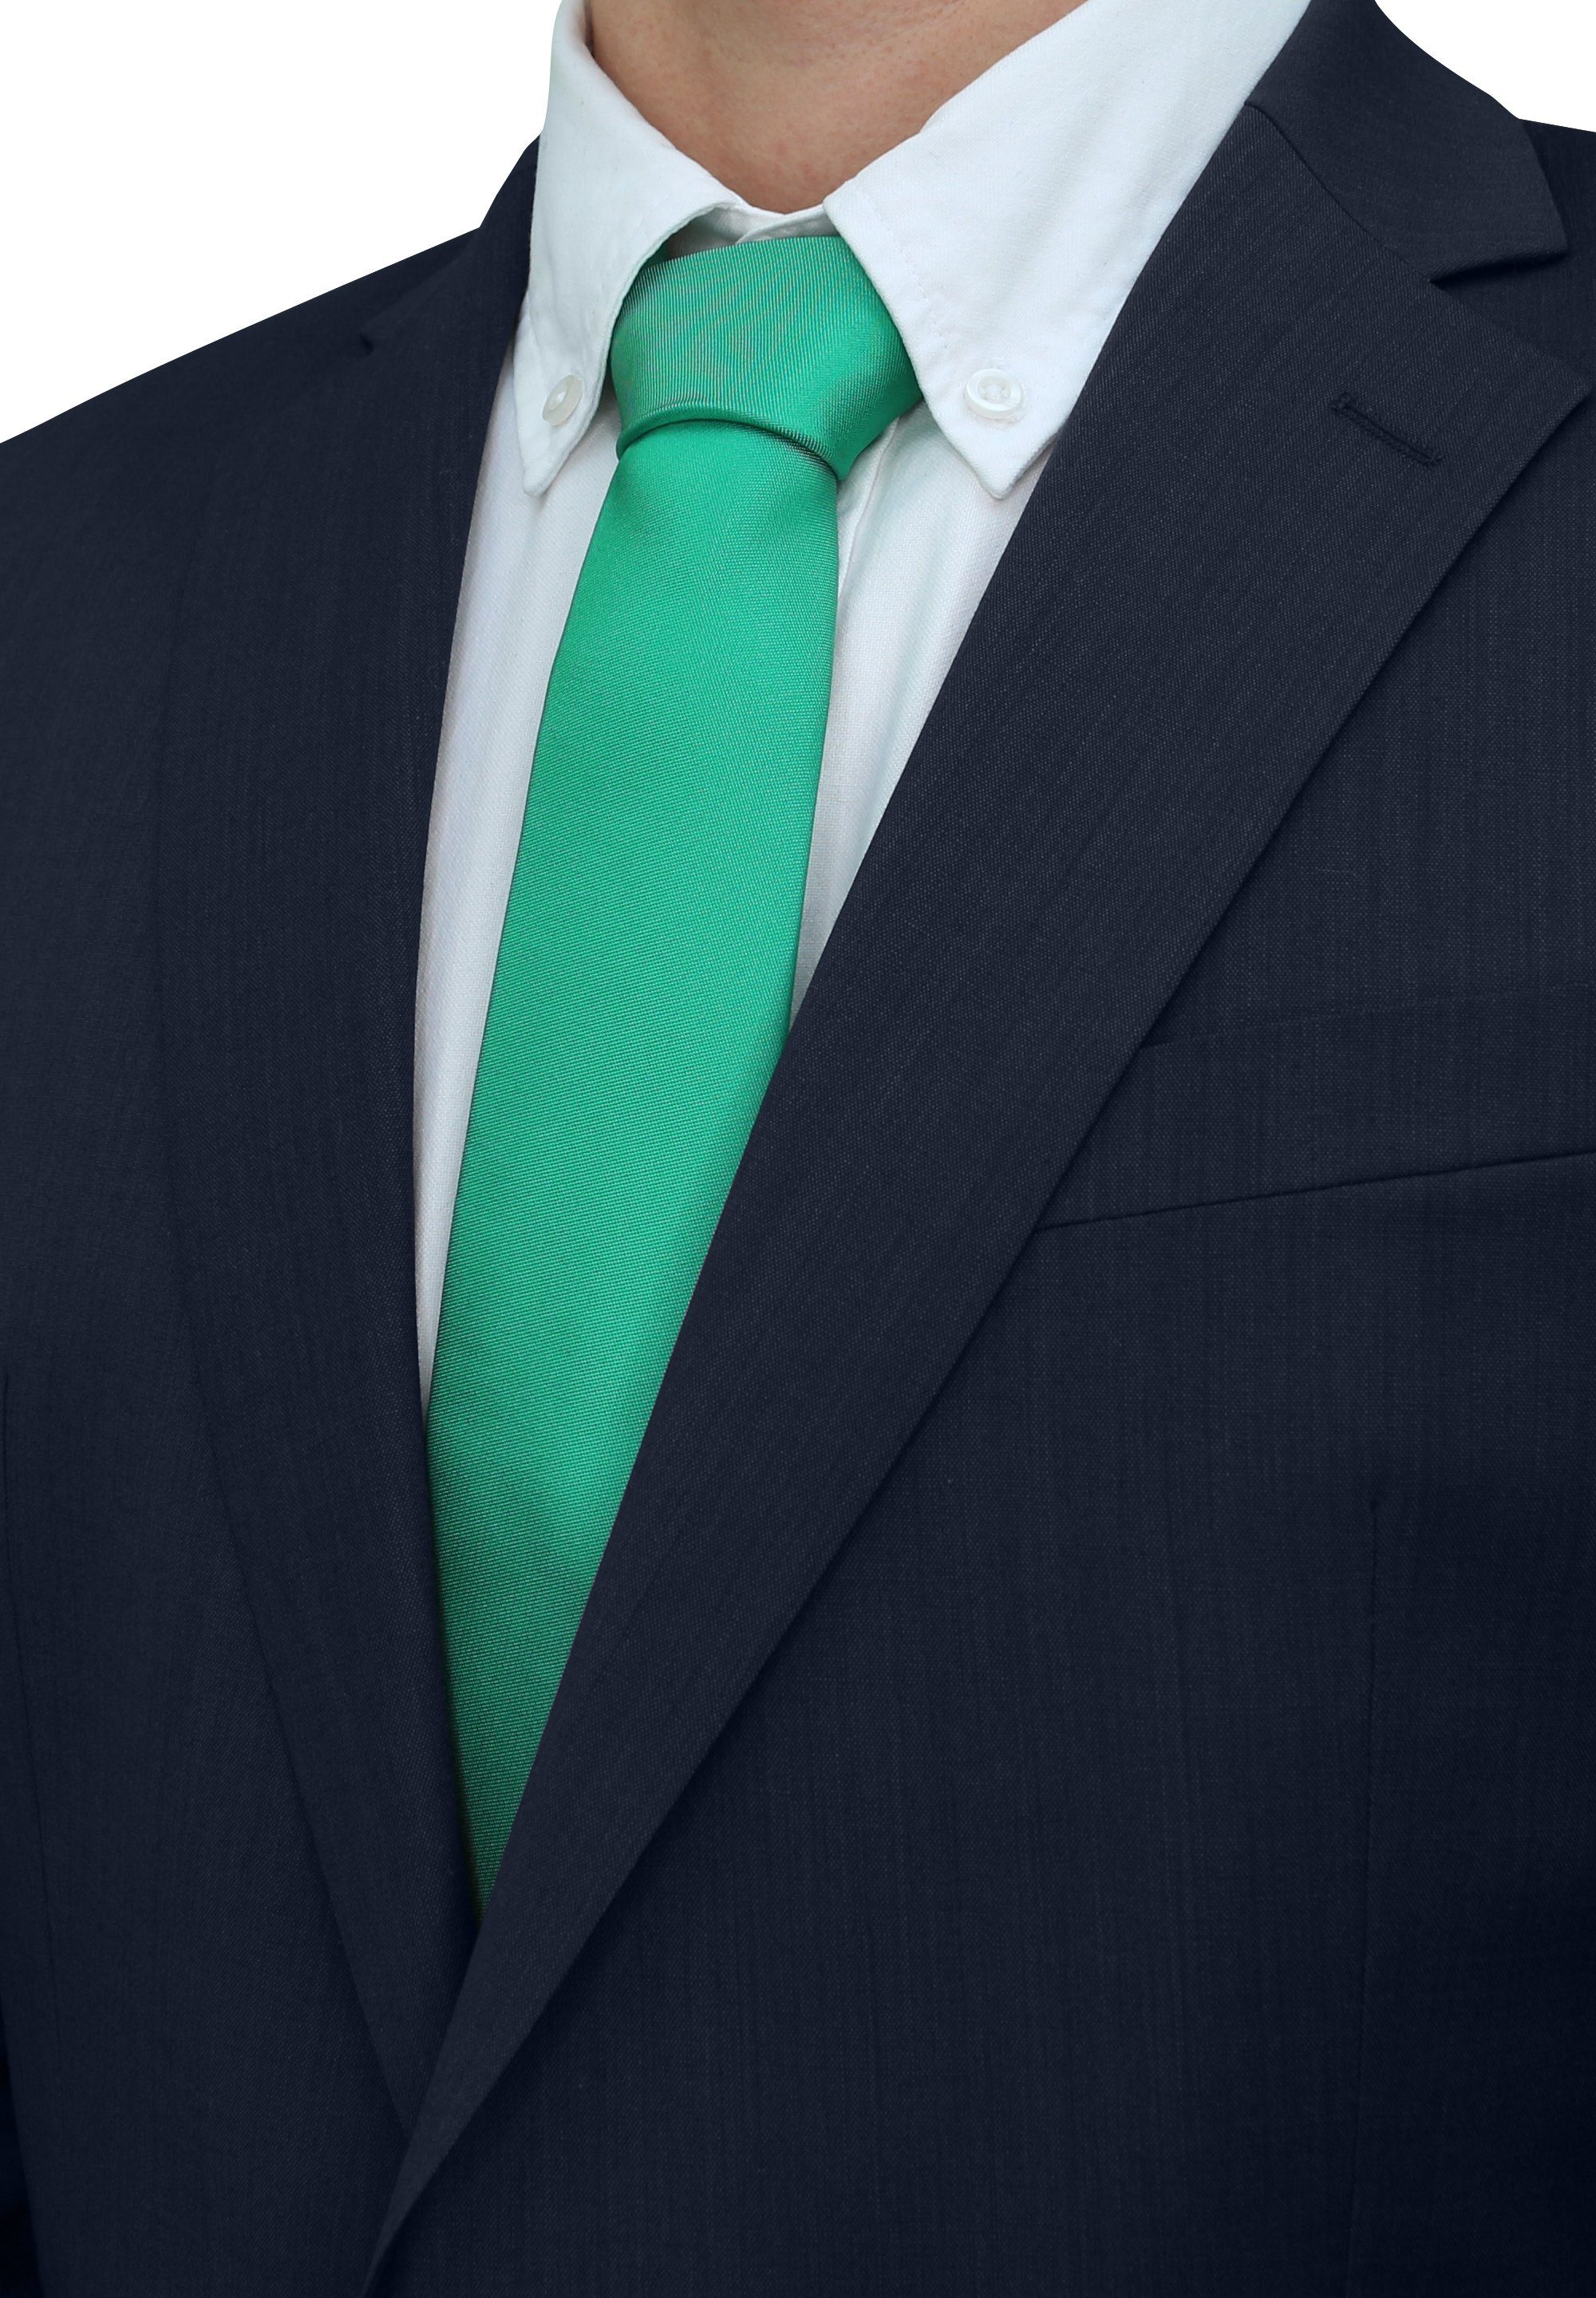 Fabio Farini Krawatte einfarbige Herren Schlips - Unicolor Krawatte in 6cm oder 8cm Breite (Unifarben) Schmal (6cm), Grün-Türkis perfekt als Geschenk